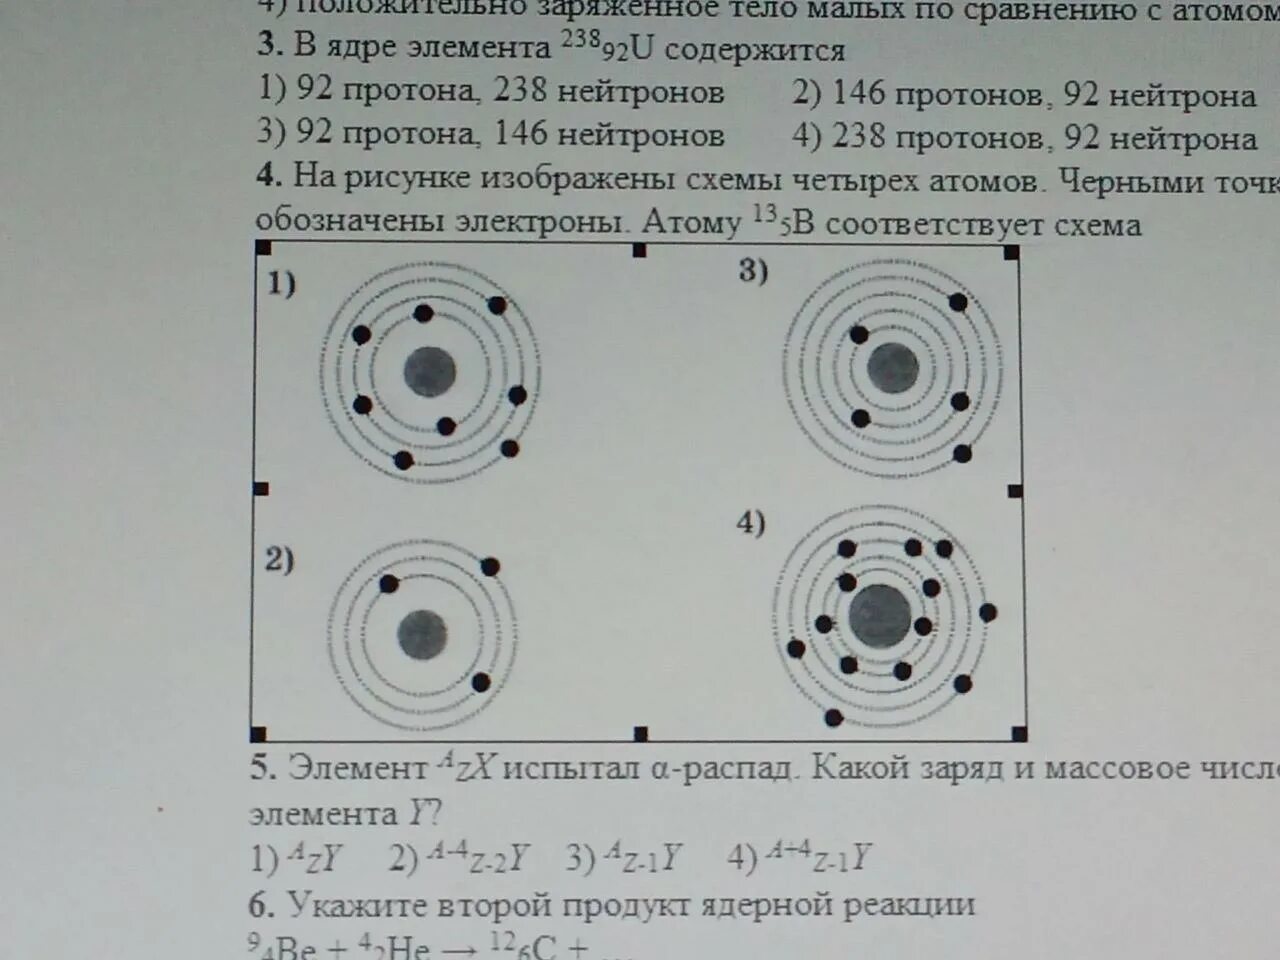 Атому 13b5 соответствует схема. Электроны обозначены черными точками атому 10 5. Схема атома 73 li. На рисунке изображены схемы четырех атомов.